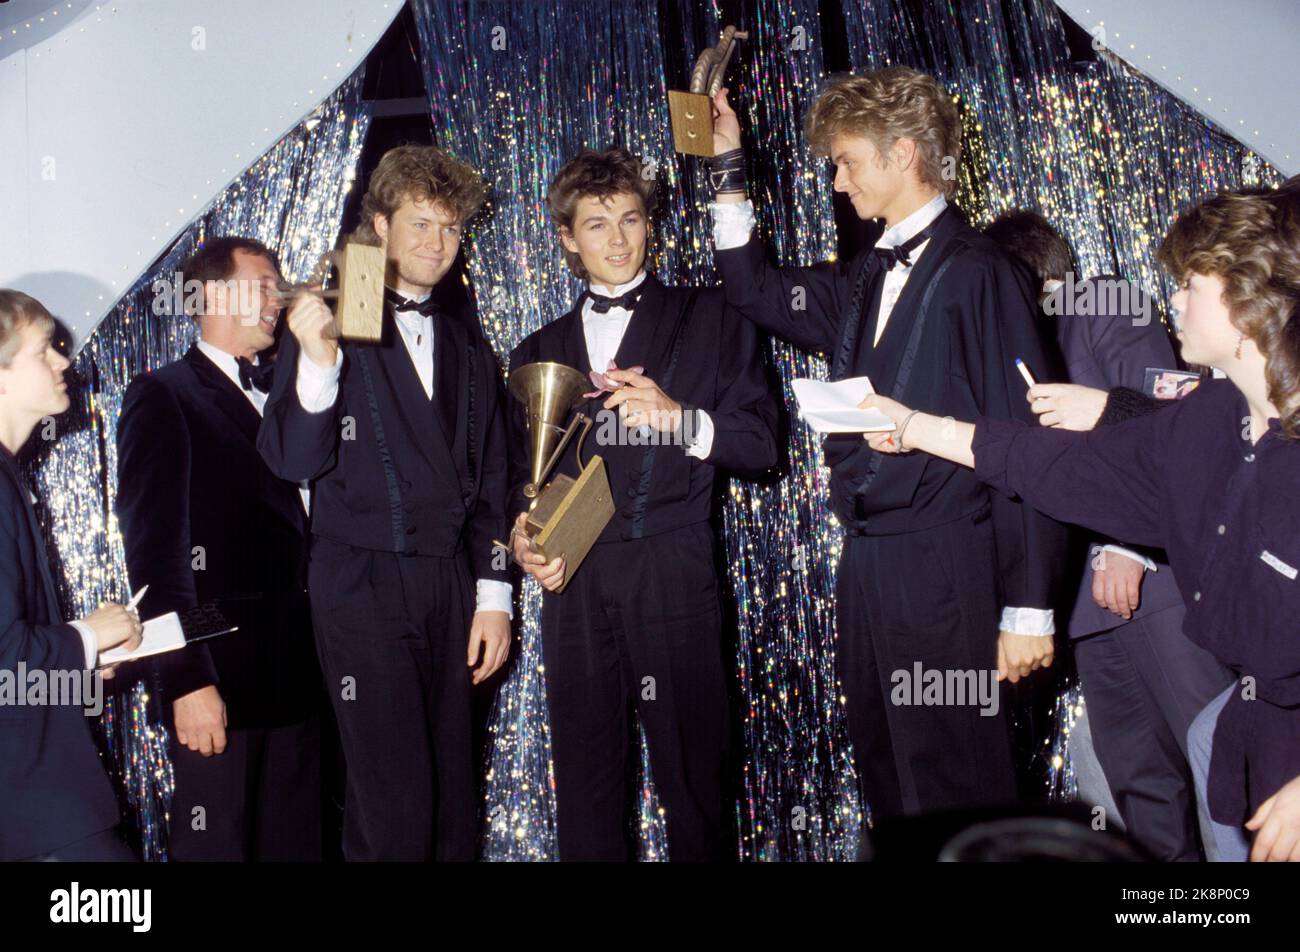 Oslo 19860118. Distribution du Prix Spellemann pour l'année 1985. Les lauréats du prix Pop et de playman cette année ont reçu le groupe a-ha. Magne Furuholmen, Morten Harket, Paul Waaktaar Savoy. Photo: Knut Nedrås NTB / NTB Banque D'Images